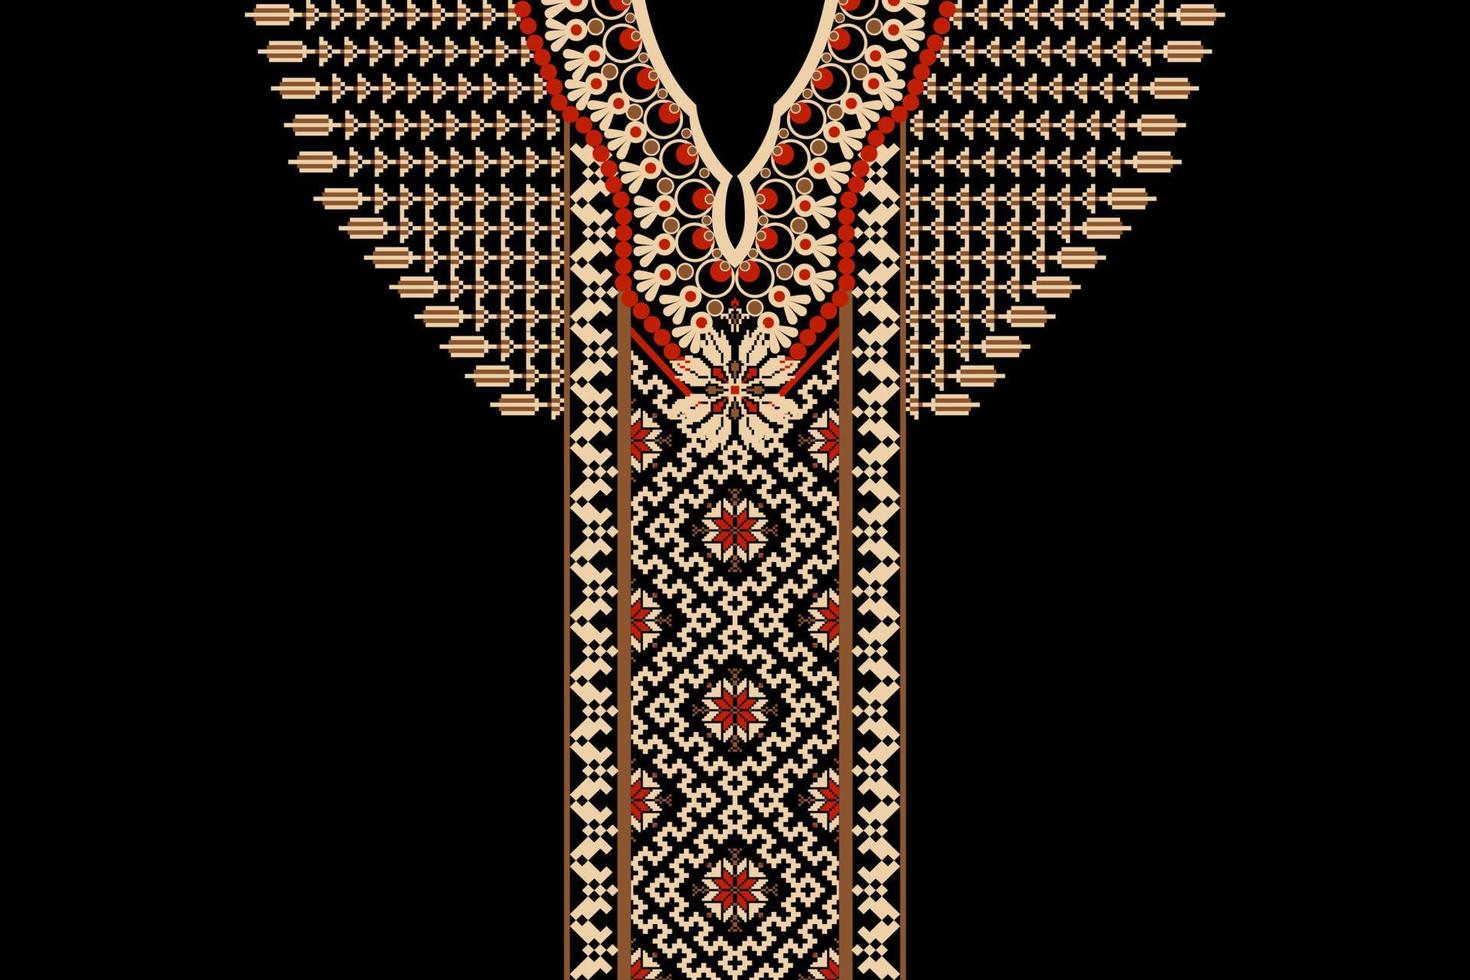 bordado de escote floral sobre fondo negro.patrón oriental étnico geométrico tradicional.vector abstracto de estilo azteca.diseño para textura,tela,ropa,mujeres de moda vistiendo,decoración,textil. vector